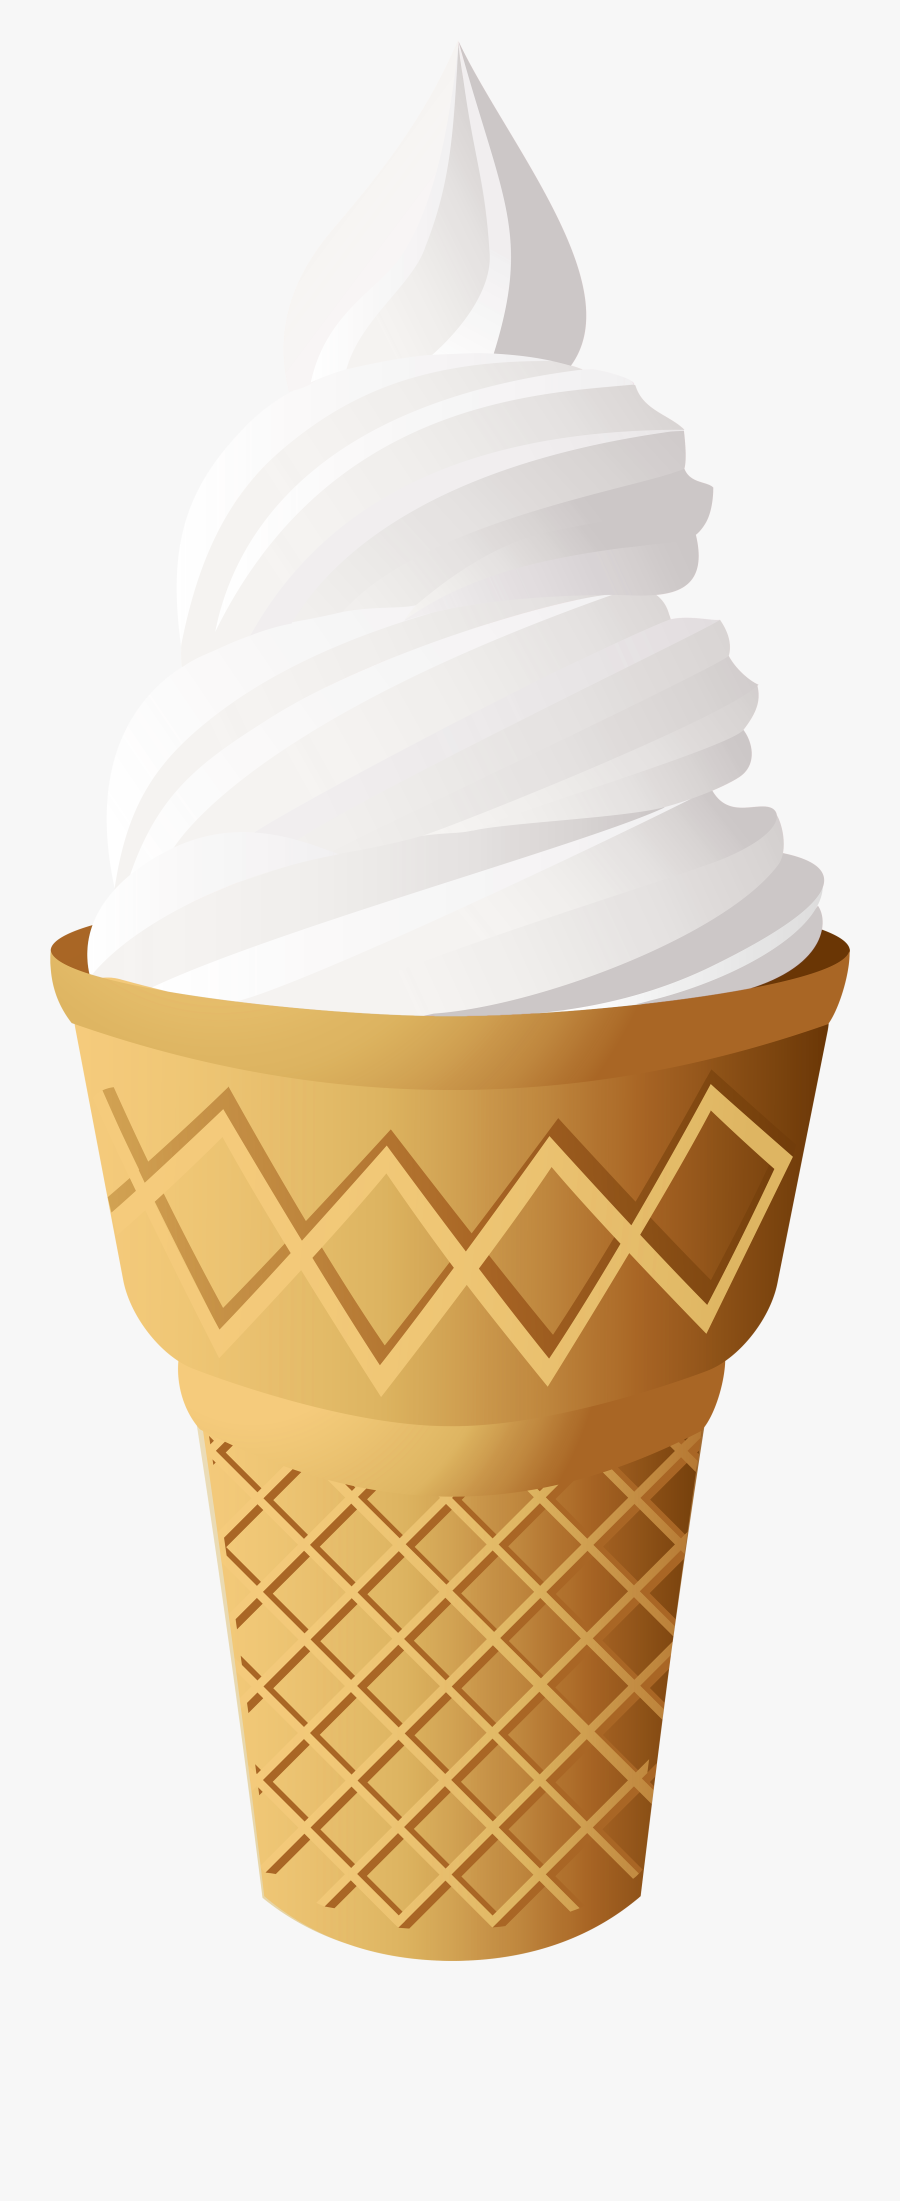 Vanilla Ice Cream Cone Png Clip Art - Ice Cream Illustration Tutorial, Transparent Clipart